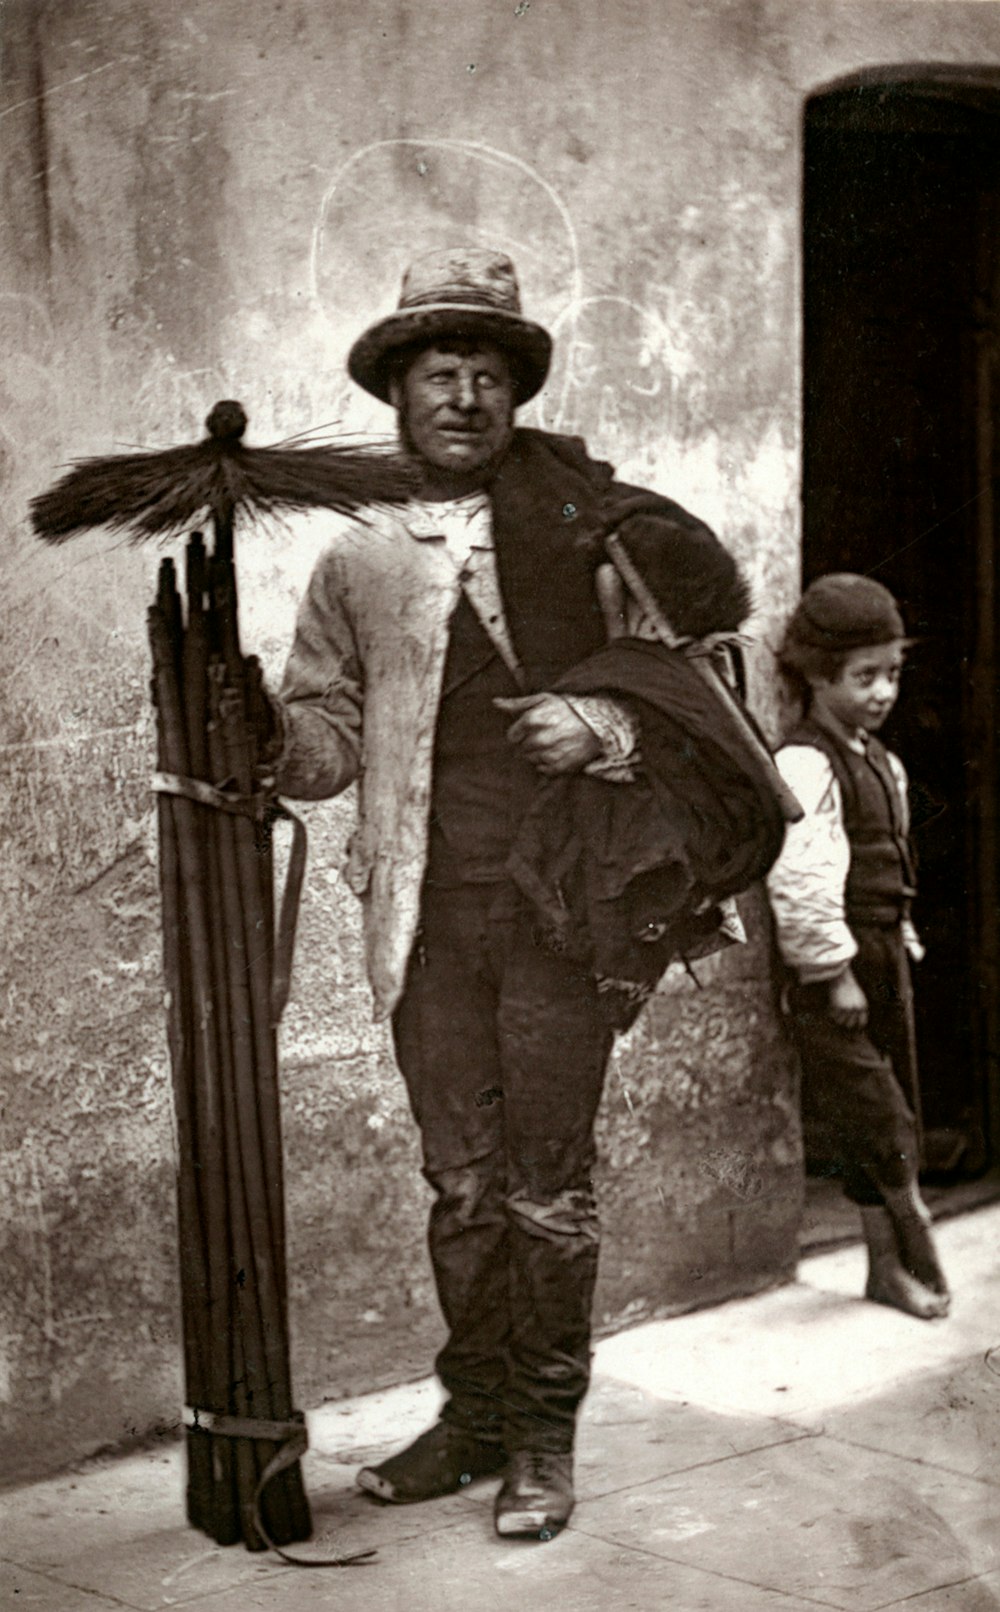 Foto in scala di grigi di un uomo in cappotto nero che tiene in mano un fucile softair